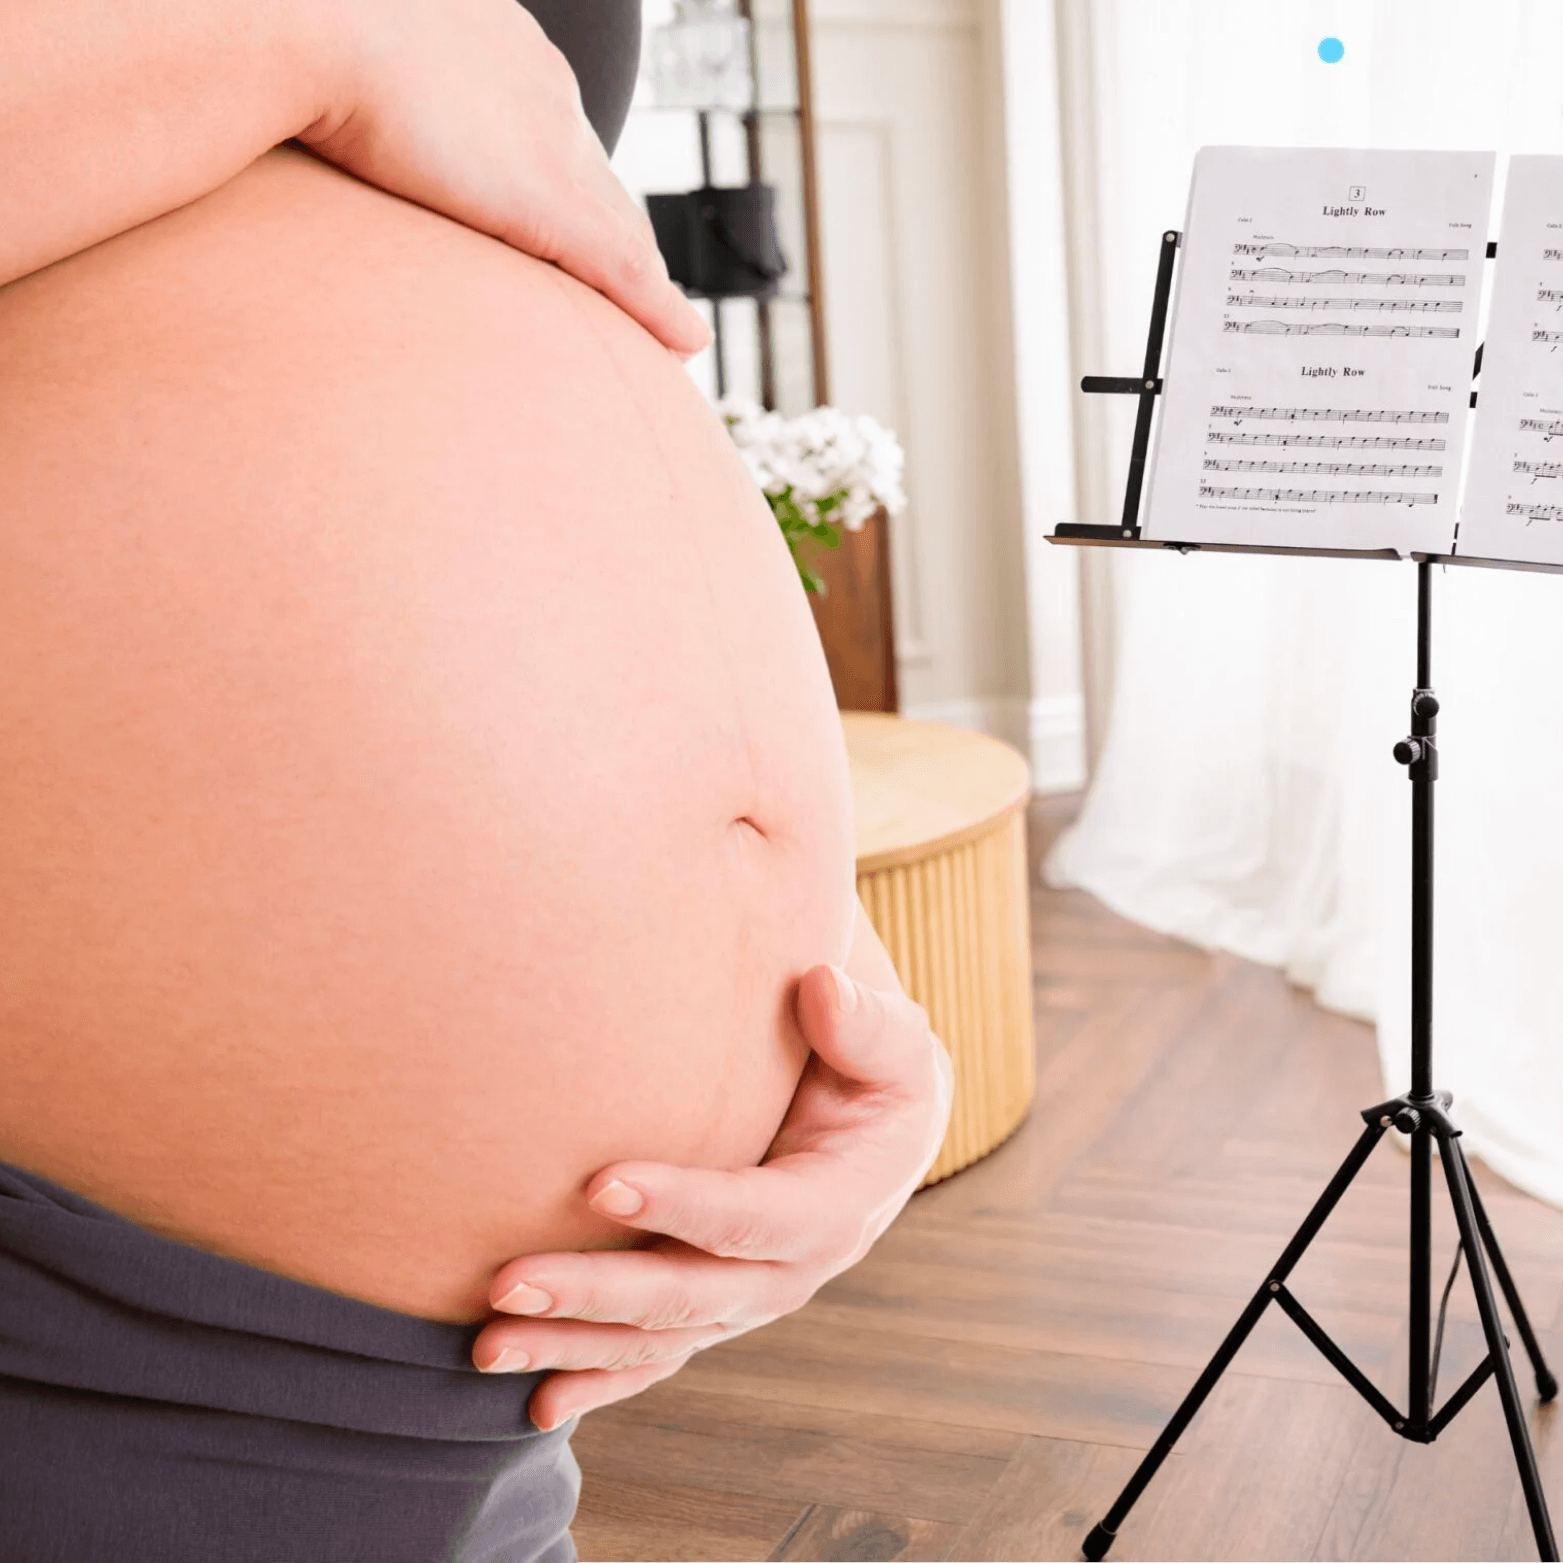 Música durante el embarazo